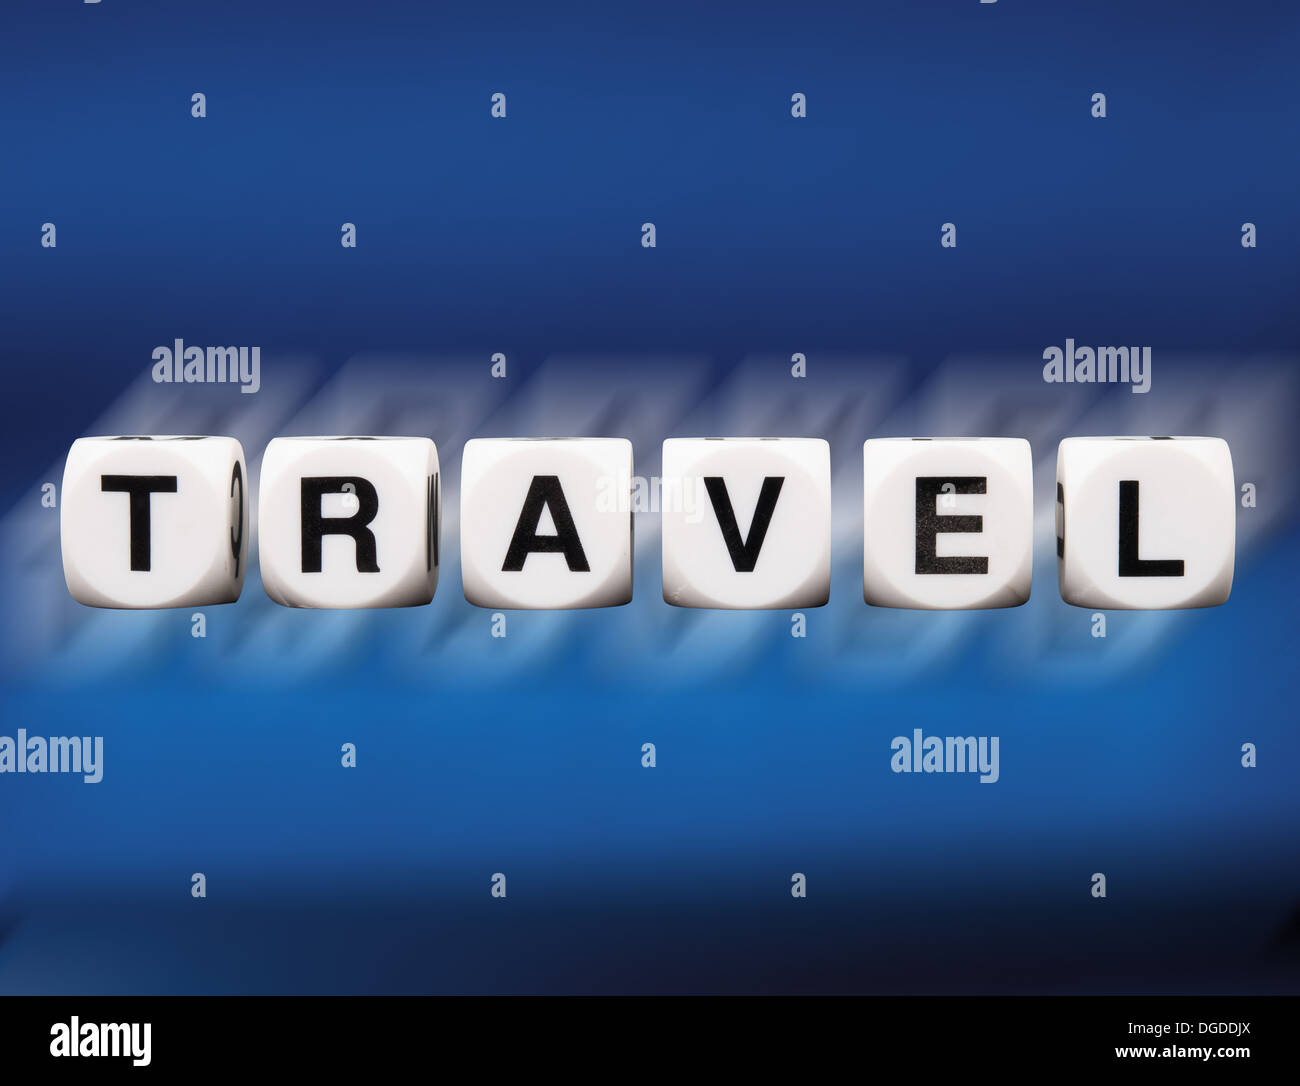 Travel scritto in lettere di dadi riflessa su sfondo blu in motion blur Foto Stock